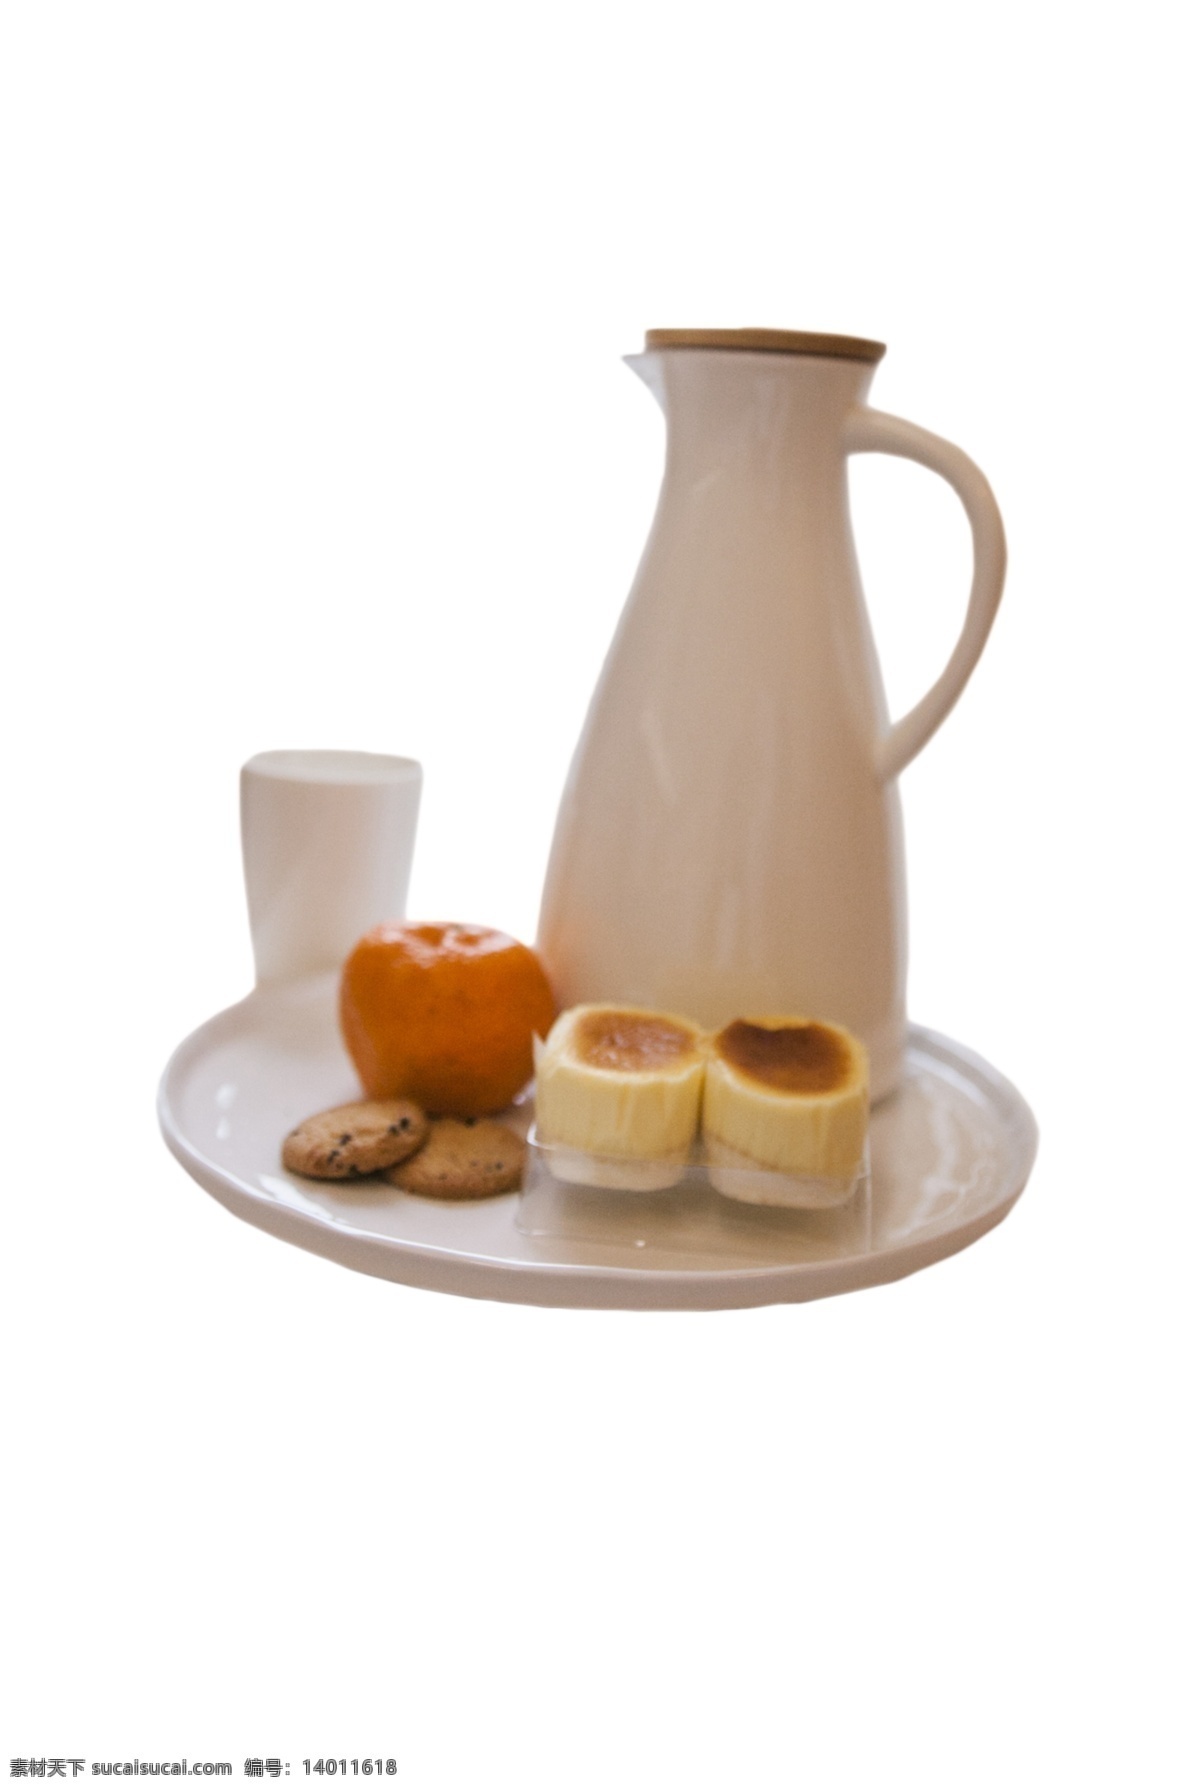 白色 托盘 橘子 蛋糕 暖水瓶 桌子 家具 简约 红色的橘子 白色的桌子 甜点 饼干